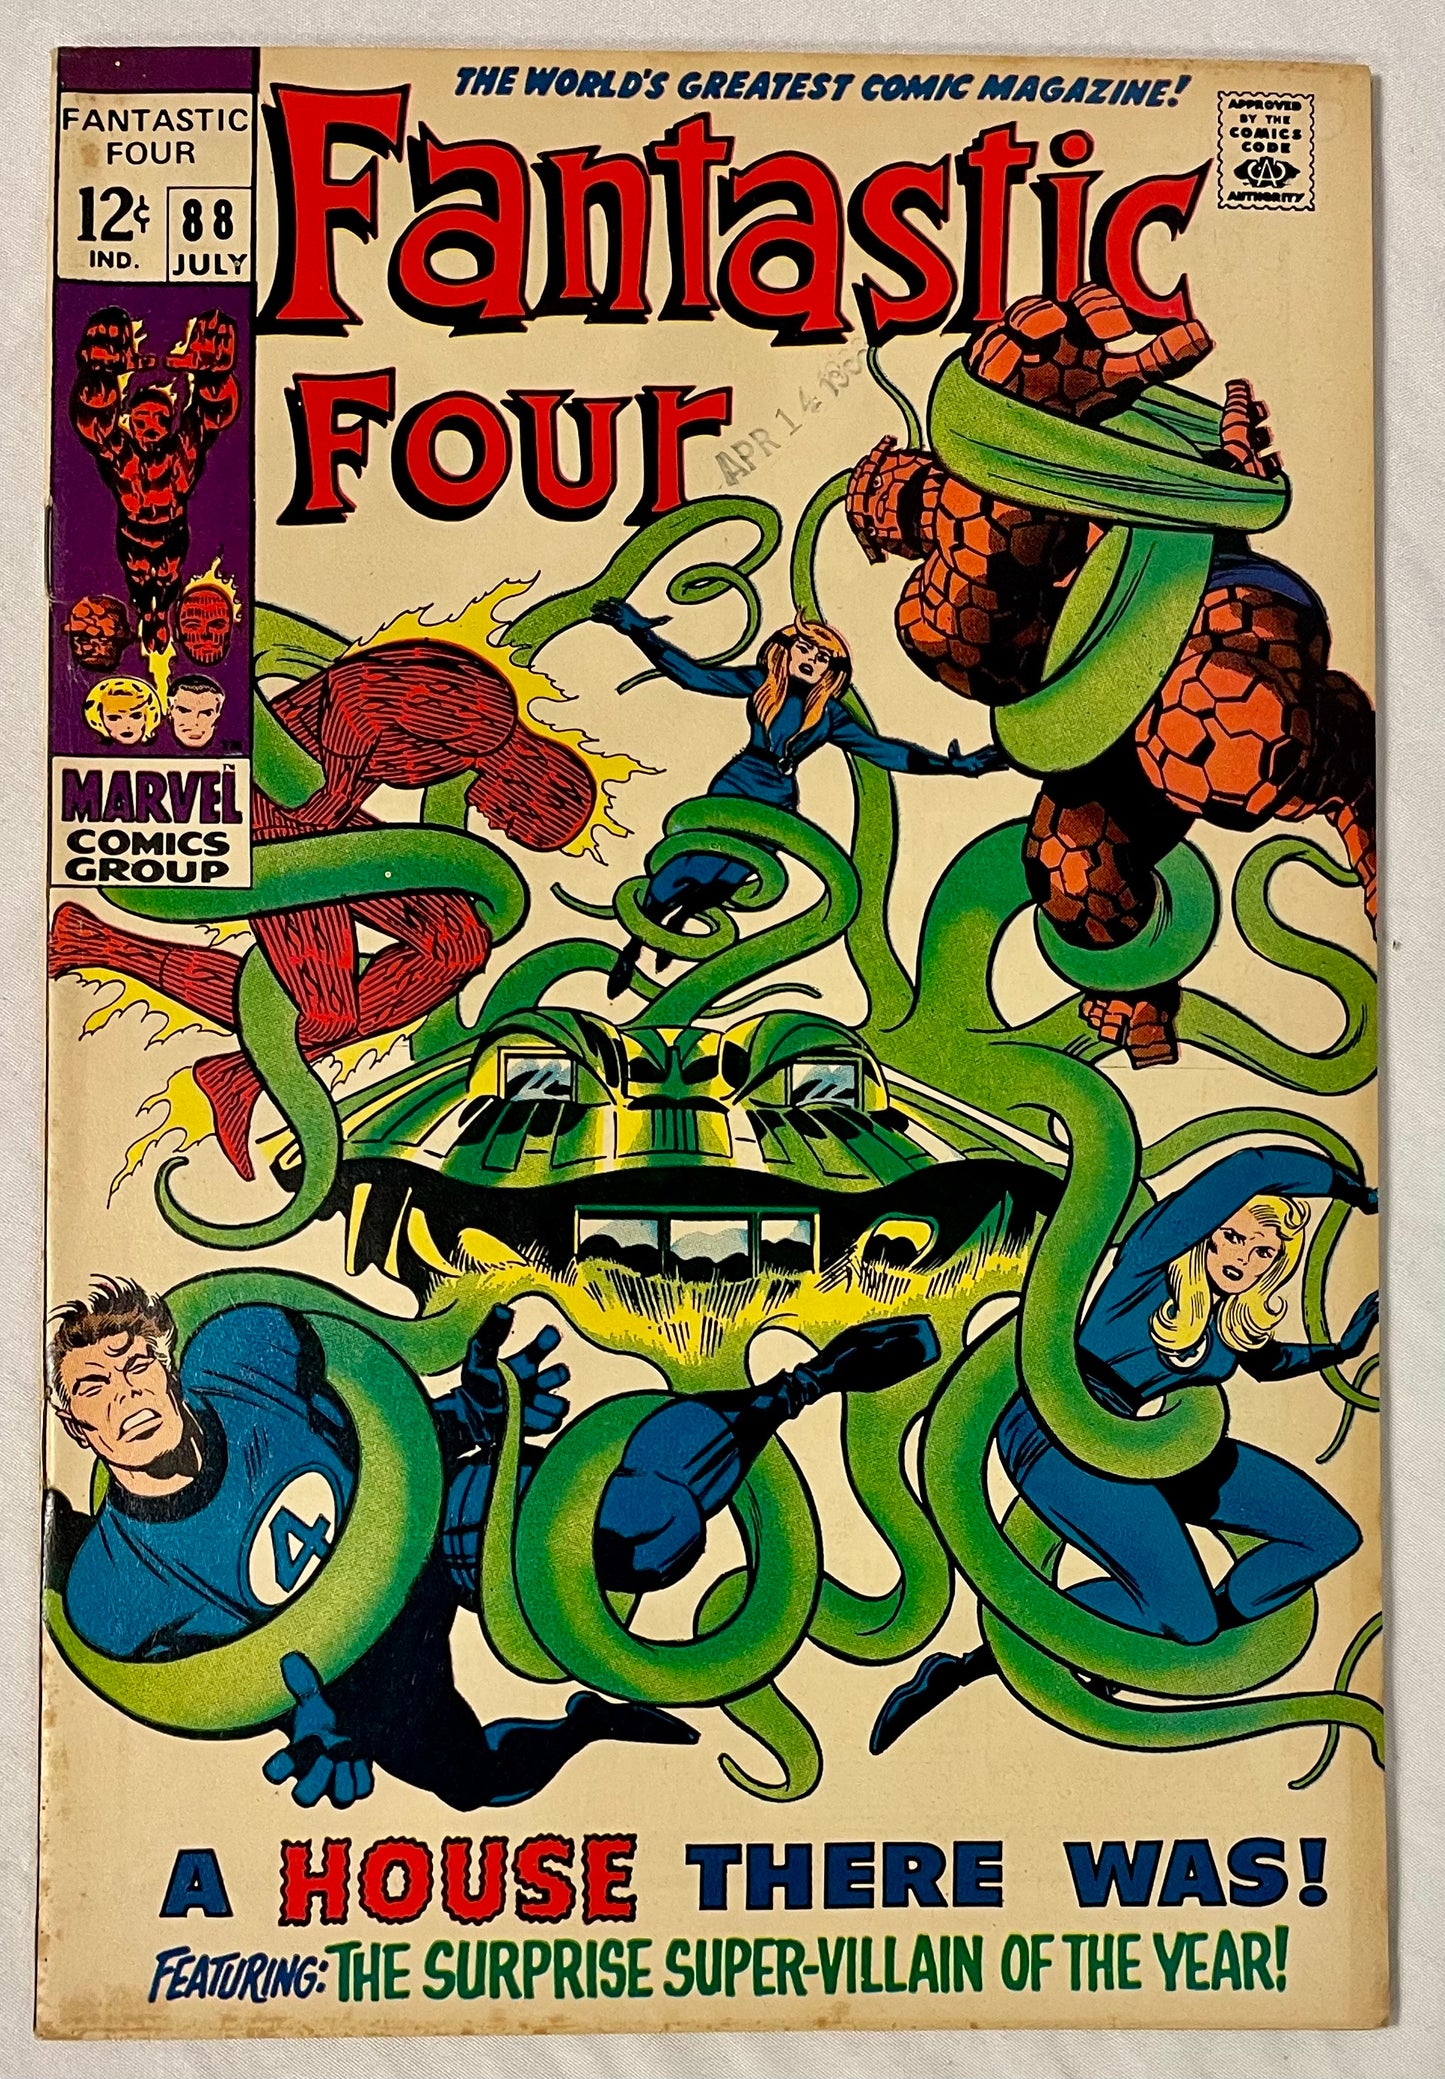 Marvel Comics Fantastic Four #88